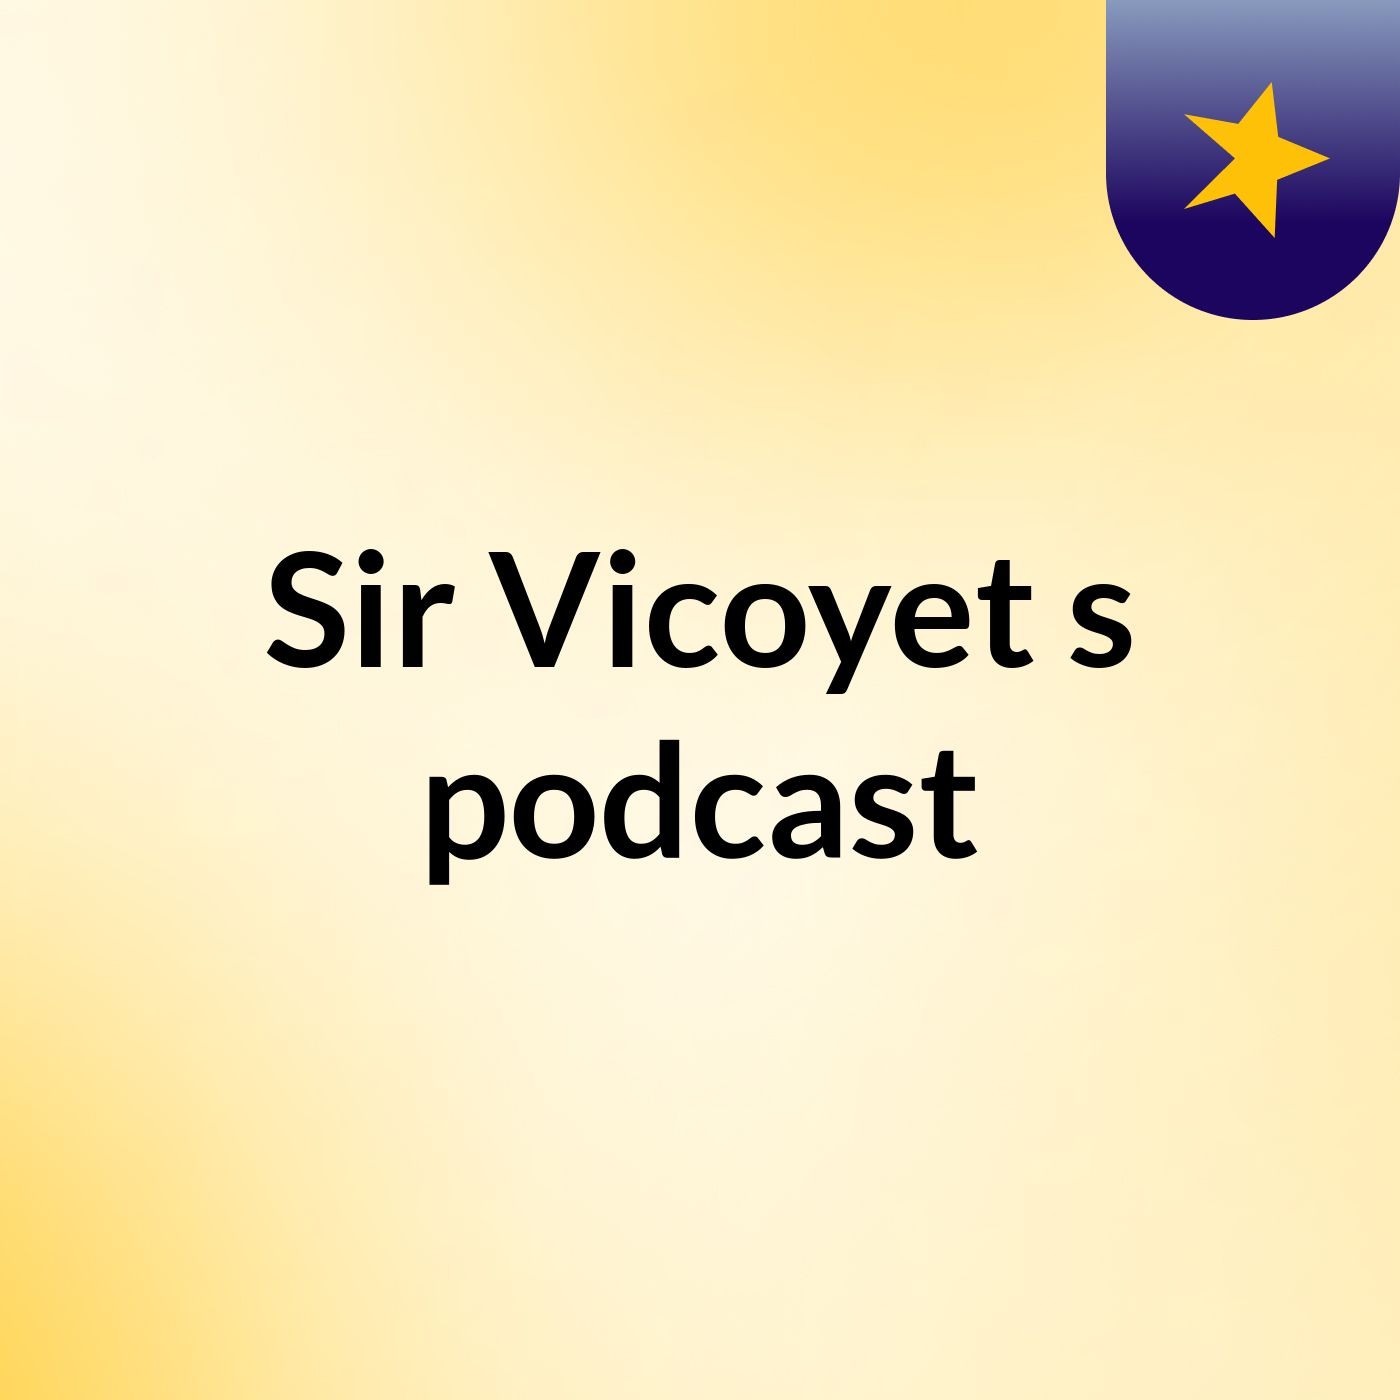 Episode 24 - Sir sponsor podcast